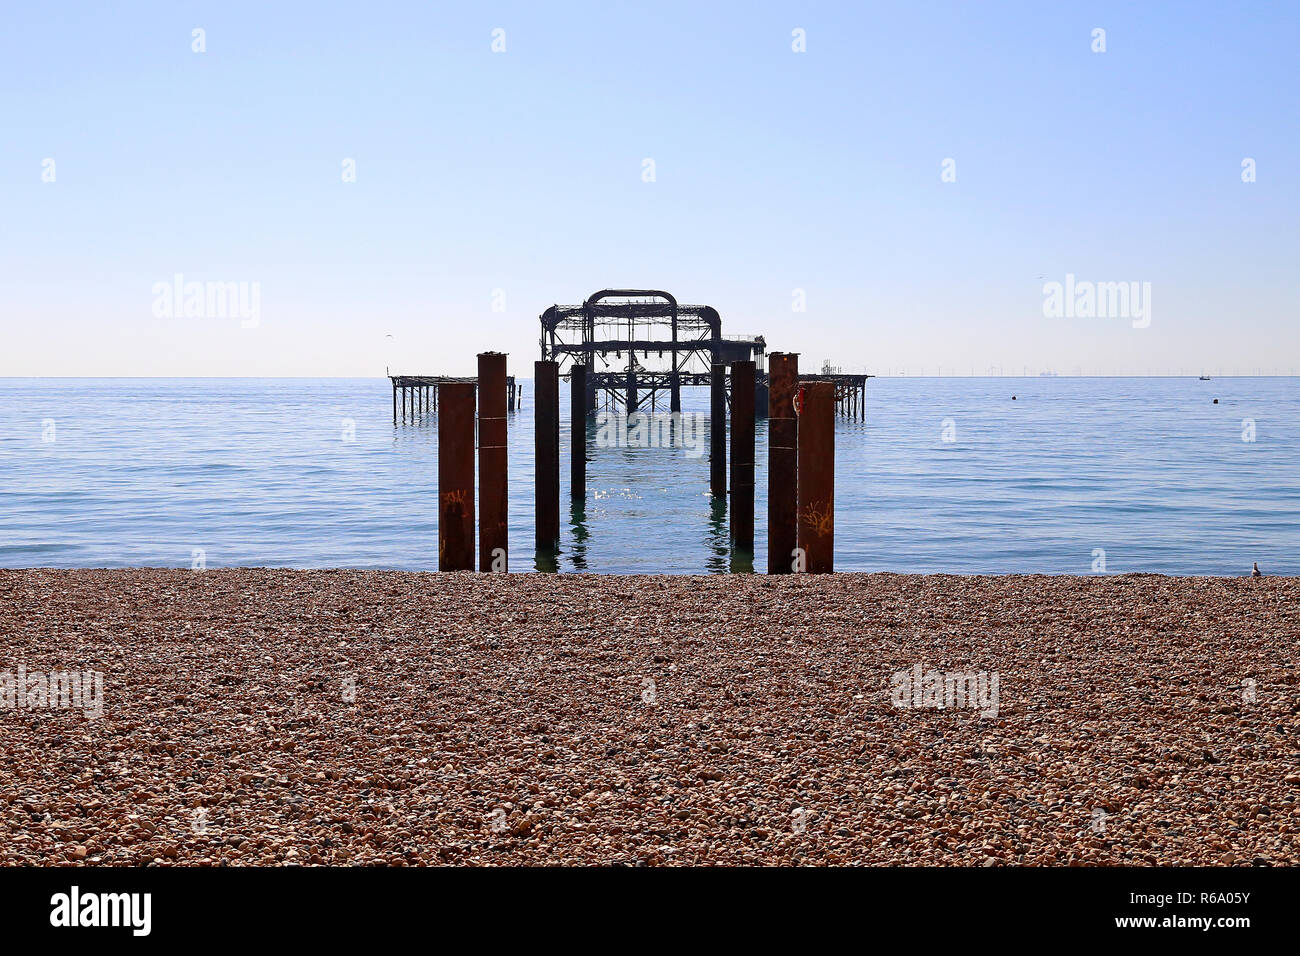 La demeure de Brighton West Pier. La plage de Brighton, Brighton. Angleterre, Royaume-Uni Banque D'Images